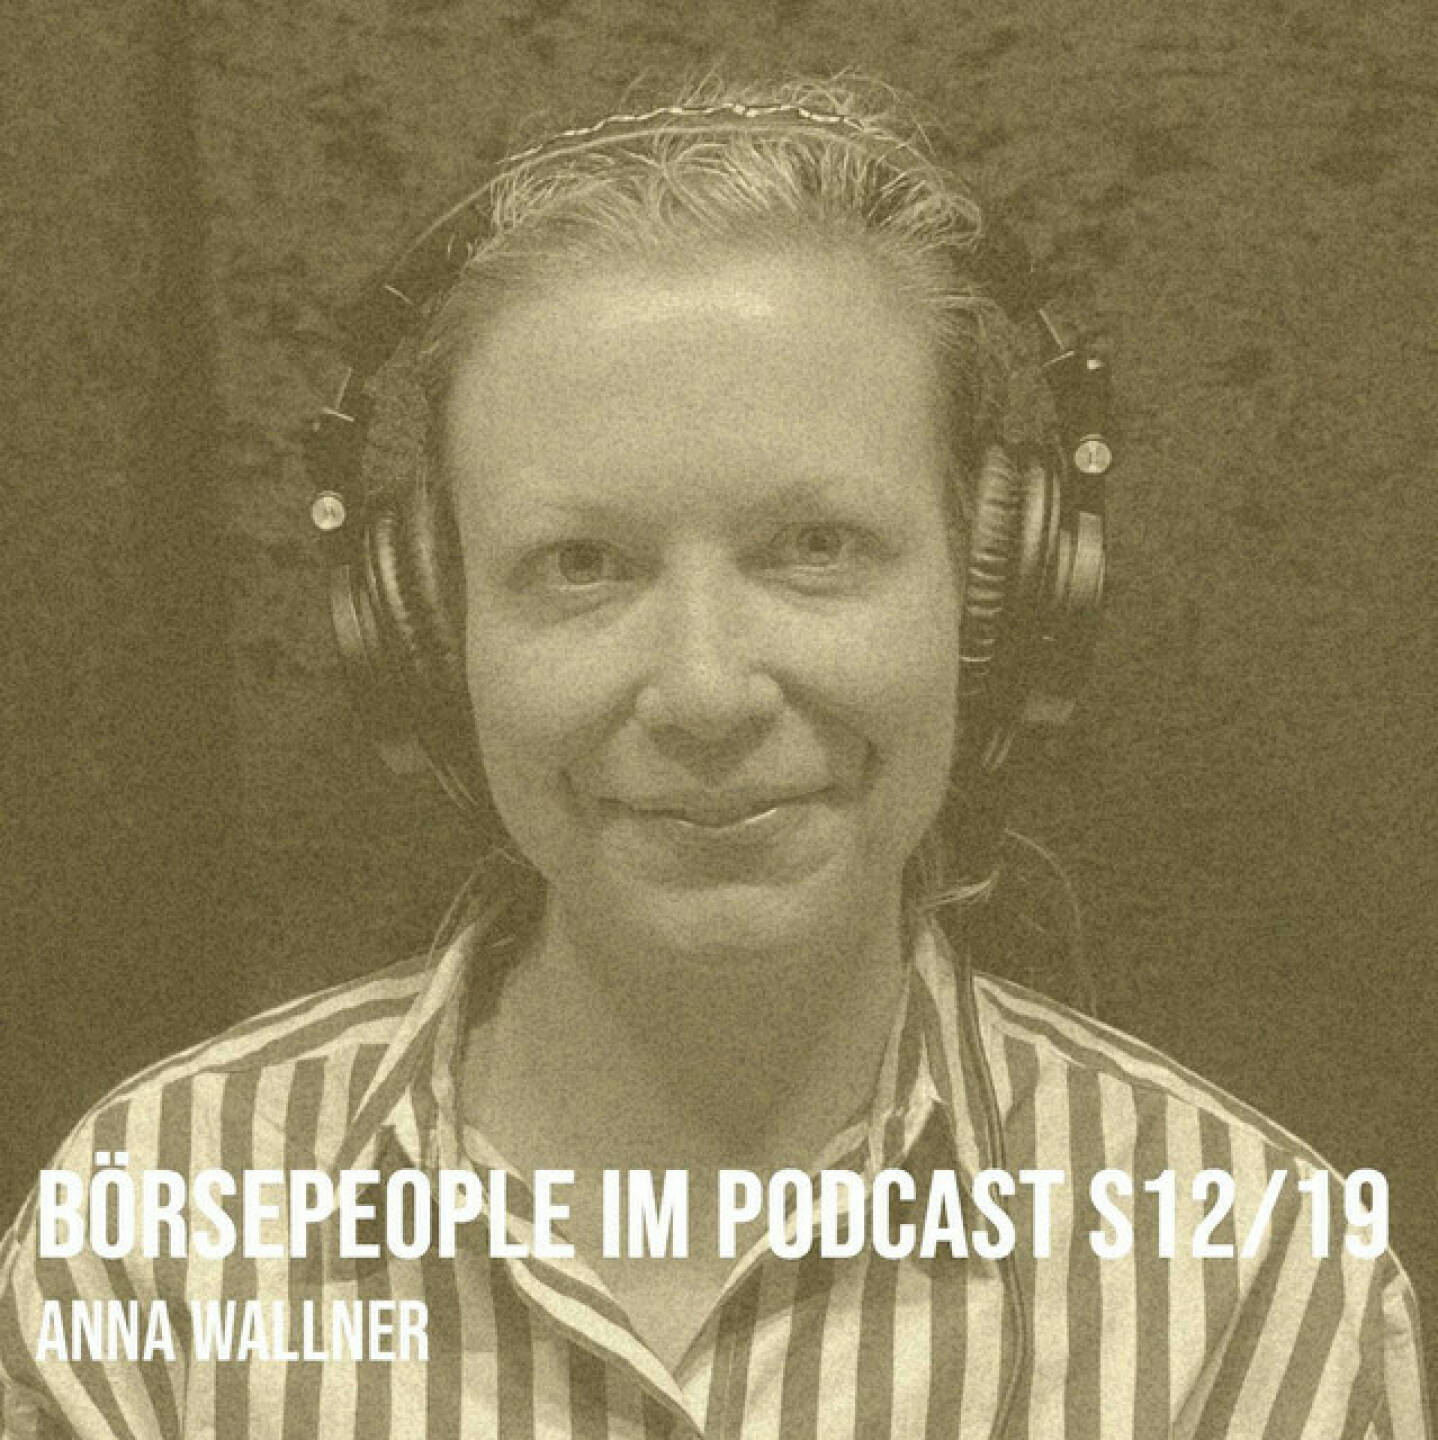 https://open.spotify.com/episode/7pPjcvhyTI3f25d68XaQju
Börsepeople im Podcast S12/19: Anna Wallner - <p>Anna Wallner ist Verantwortliche für die Audio-Produkte bei der Tageszeitung Die Presse, u.a. als Podcast-Host von &#34;Presse Play&#34;. Wir sprechen auch über mein Geld, also nicht wirklich über mein Geld, sondern über Annas Podcastformat &#34;Mein Geld&#34;. Mit einer Juristin geht es natürlich zudem um die Themen Volksanwaltschaft, Gerichtsjahr, dazu aber auch um Ausbildung, um das Wall Street Journal, Portland, Oxford, das Reuters Institute, um Debatten, die Presse am Sonntag und die Mutter beim Profil. Aufgenommen wurde nicht in meinem Studio, sondern bei der Presse samt noch neu anmutender Lounge-Räume. Wow.<br/><br/><a href=https://www.diepresse.com/meinung/podcast target=_blank>https://www.diepresse.com/meinung/podcast</a><br/><br/><a href=https://www.linkedin.com/in/anna-wallner-13aa0a3b/ target=_blank>https://www.linkedin.com/in/anna-wallner-13aa0a3b/</a><br/><br/>Madlen Stottmeyer, Presse: <a href=https://audio-cd.at/page/podcast/4860/ target=_blank>https://audio-cd.at/page/podcast/4860/</a><br/><br/>About: Die Serie Börsepeople findet im Rahmen von <a href=http://www.audio-cd.at target=_blank>http://www.audio-cd.at</a> und dem Podcast &#34;Audio-CD.at Indie Podcasts&#34; statt. Es handelt sich dabei um typische Personality- und Werdegang-Gespräche. Die Season 12 umfasst unter dem Motto „24 Börsepeople“ 24 Talks. Presenter der Season 12 ist Re:Guest, <a href=https://www.reguest.io/de/buchungssoftware-hotel/1-0.html target=_blank>https://www.reguest.io/de/buchungssoftware-hotel/1-0.html</a> .Welcher der meistgehörte Börsepeople Podcast ist, sieht man unter <a href=http://www.audio-cd.at/people target=_blank>http://www.audio-cd.at/people.</a> Der Zwischenstand des laufenden Rankings ist tagesaktuell um 12 Uhr aktualisiert.<br/><br/>Bewertungen bei Apple (oder auch Spotify) machen mir Freude: <a href=https://podcasts.apple.com/at/podcast/audio-cd-at-indie-podcasts-wiener-boerse-sport-musik-und-mehr/id1484919130 target=_blank>https://podcasts.apple.com/at/podcast/audio-cd-at-indie-podcasts-wiener-boerse-sport-musik-und-mehr/id1484919130</a> .</p>